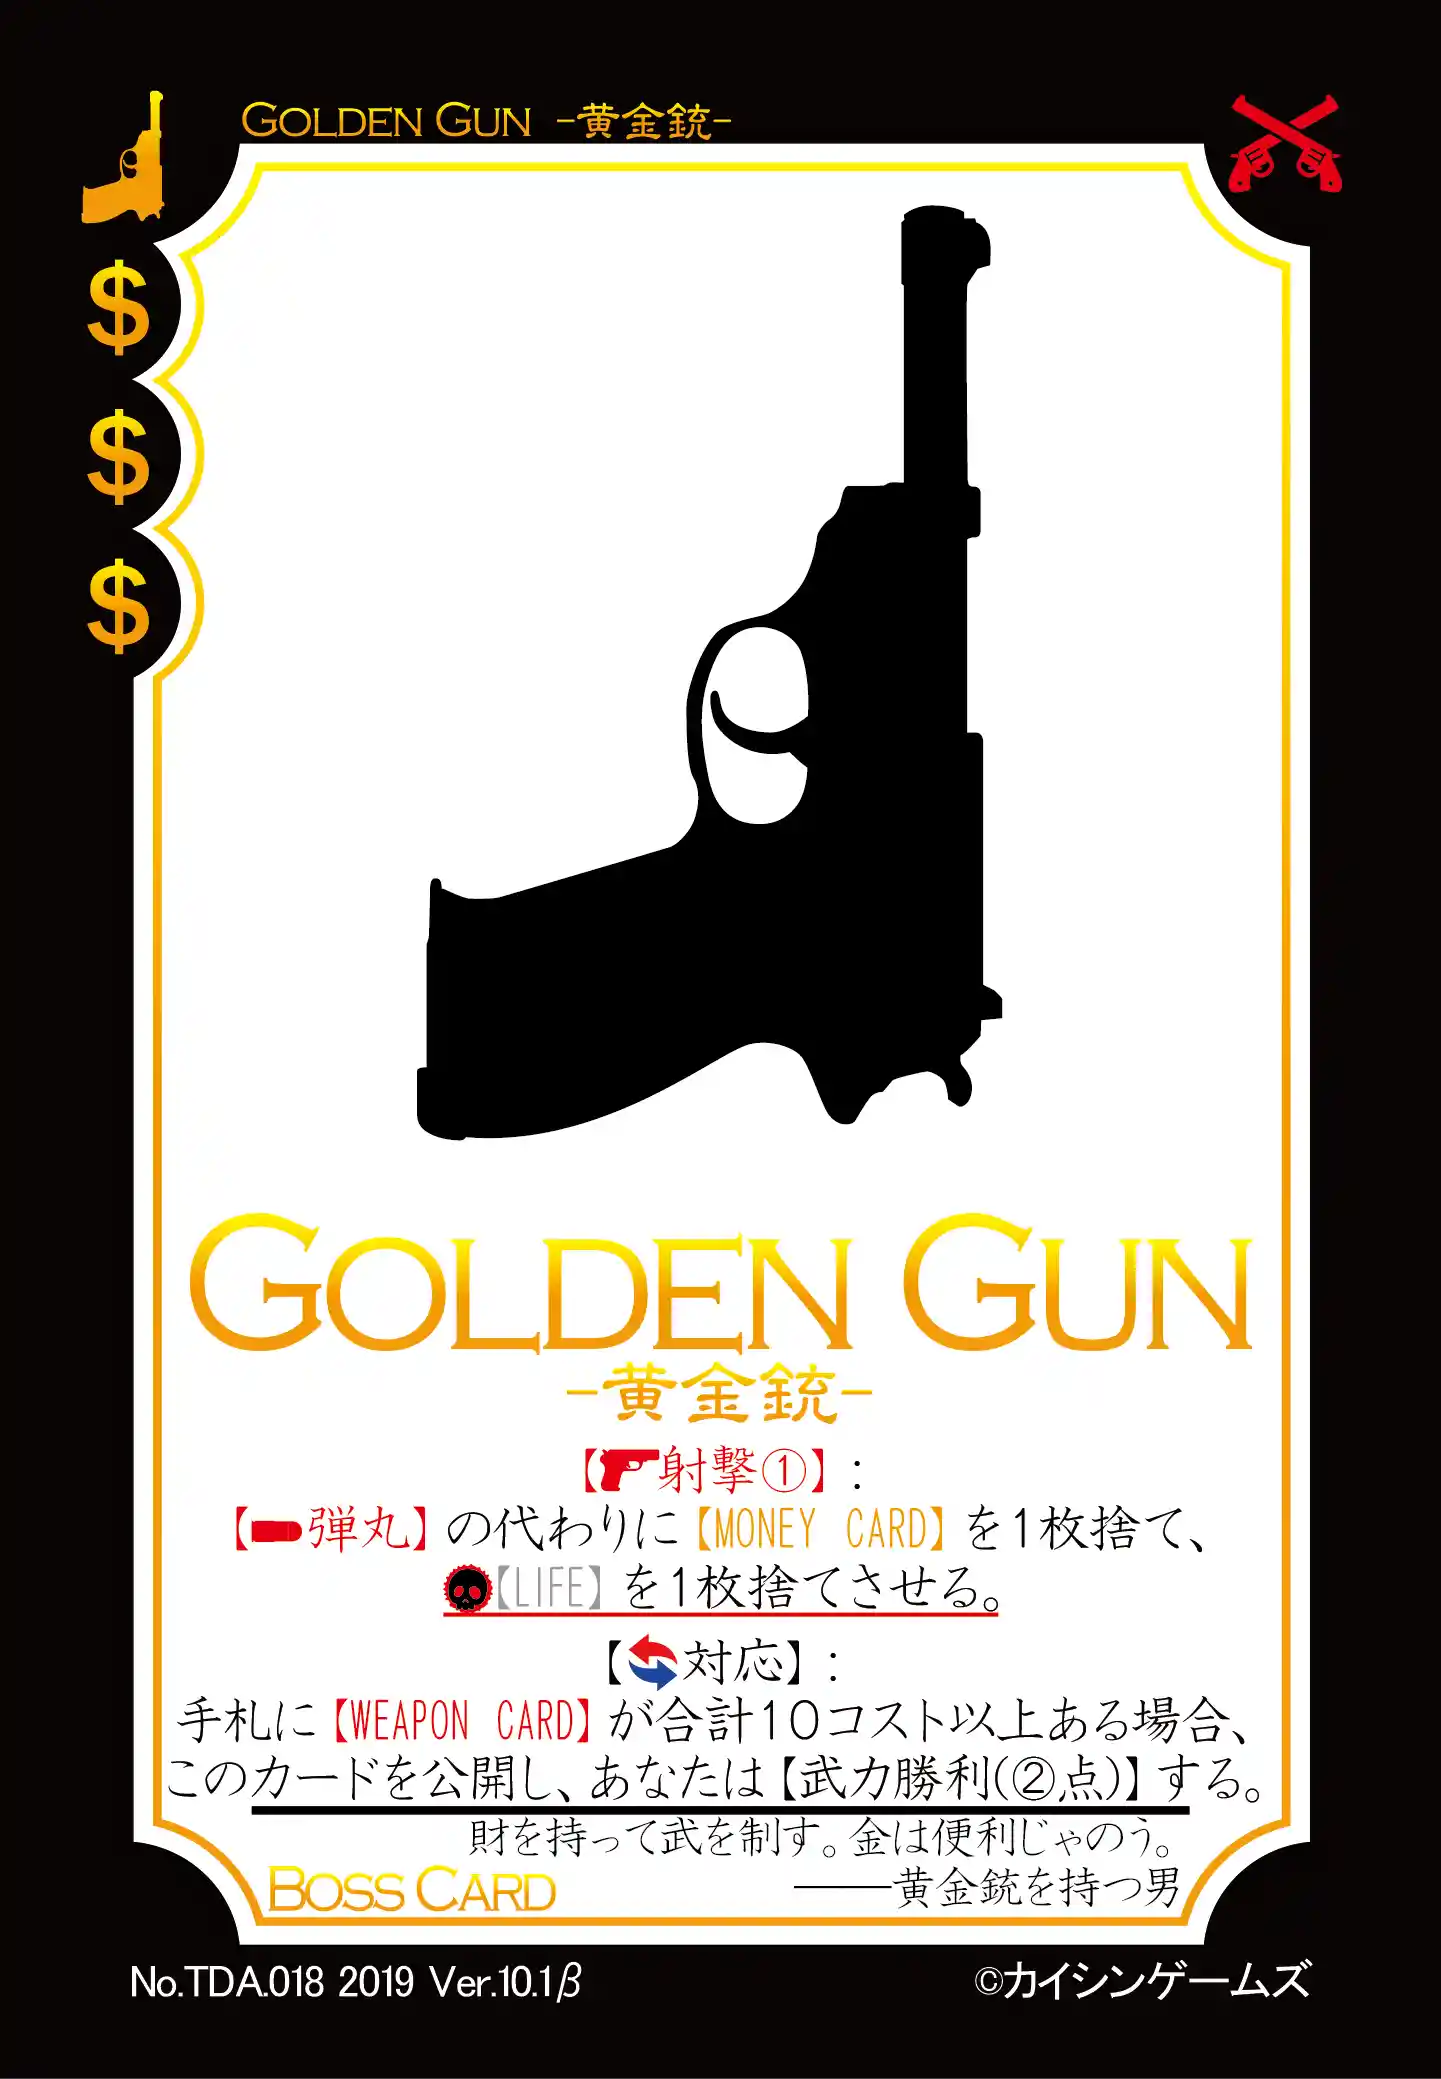 GOLDEN GUN